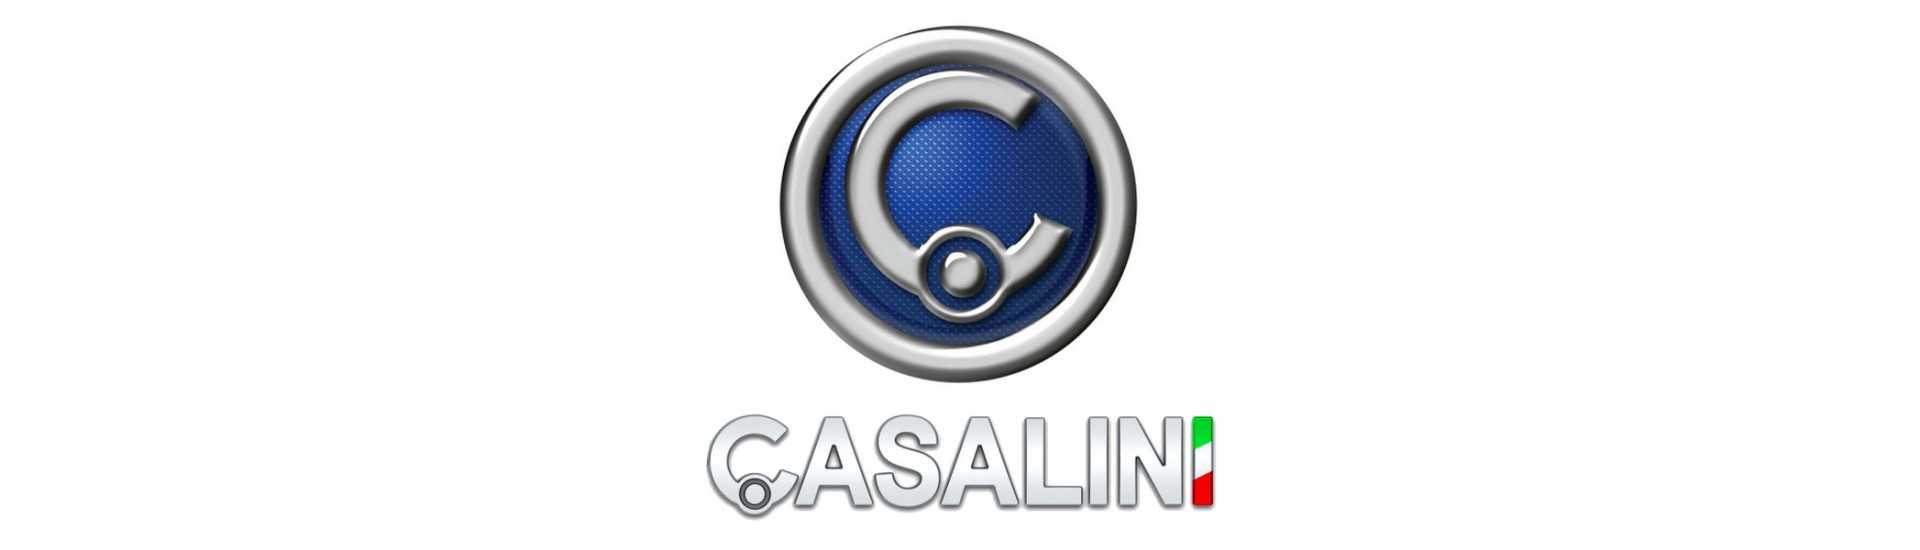 Kit de întreținere la cel mai bun preț pentru o mașină fără permis Casalini